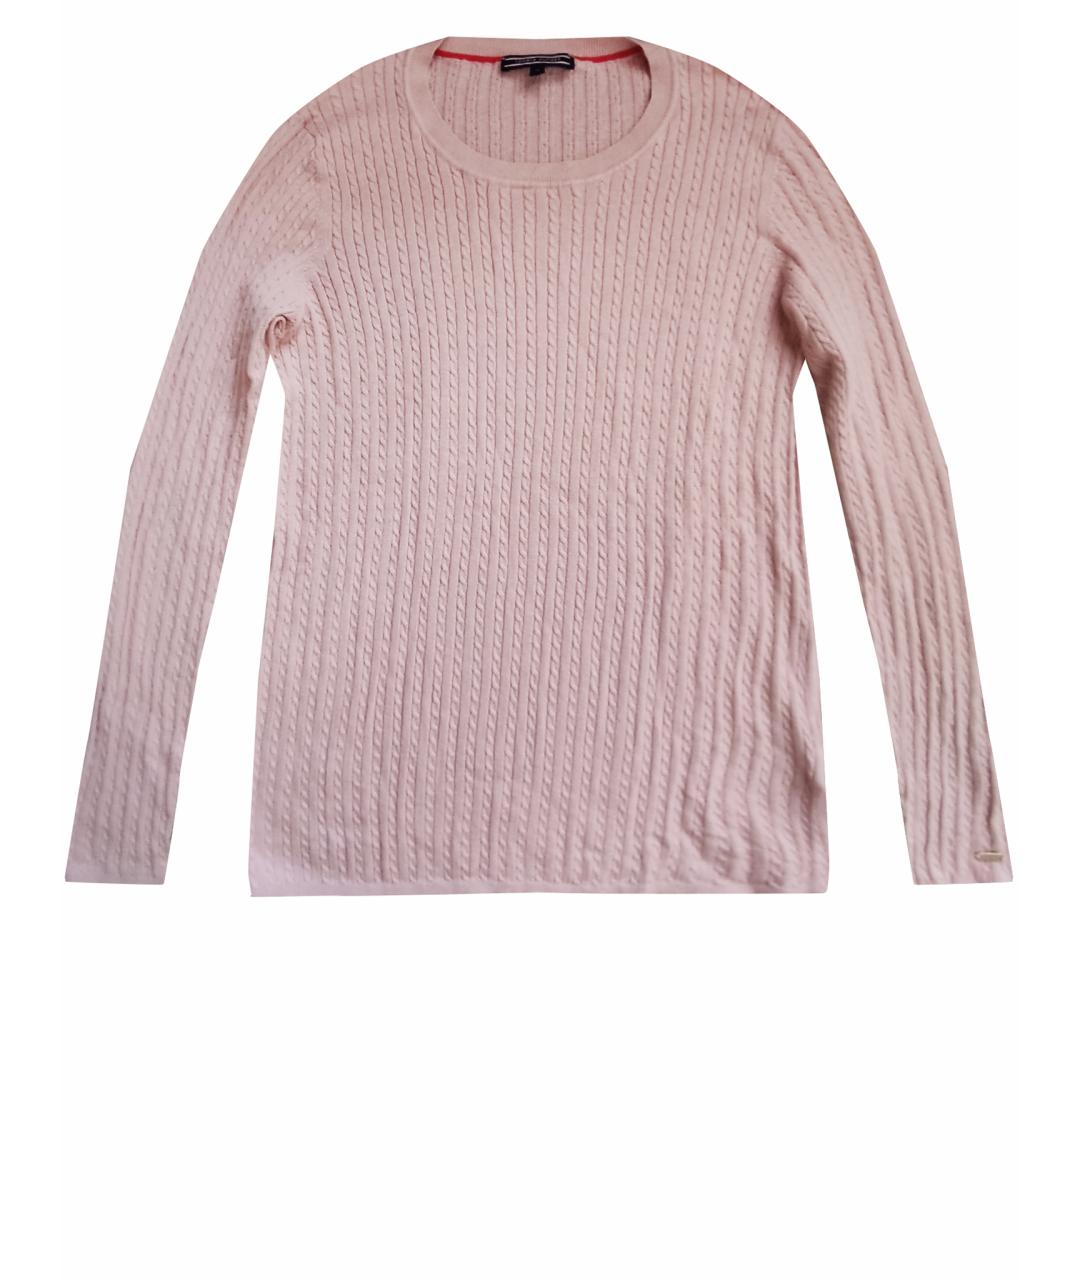 TOMMY HILFIGER Розовый хлопковый джемпер / свитер, фото 1